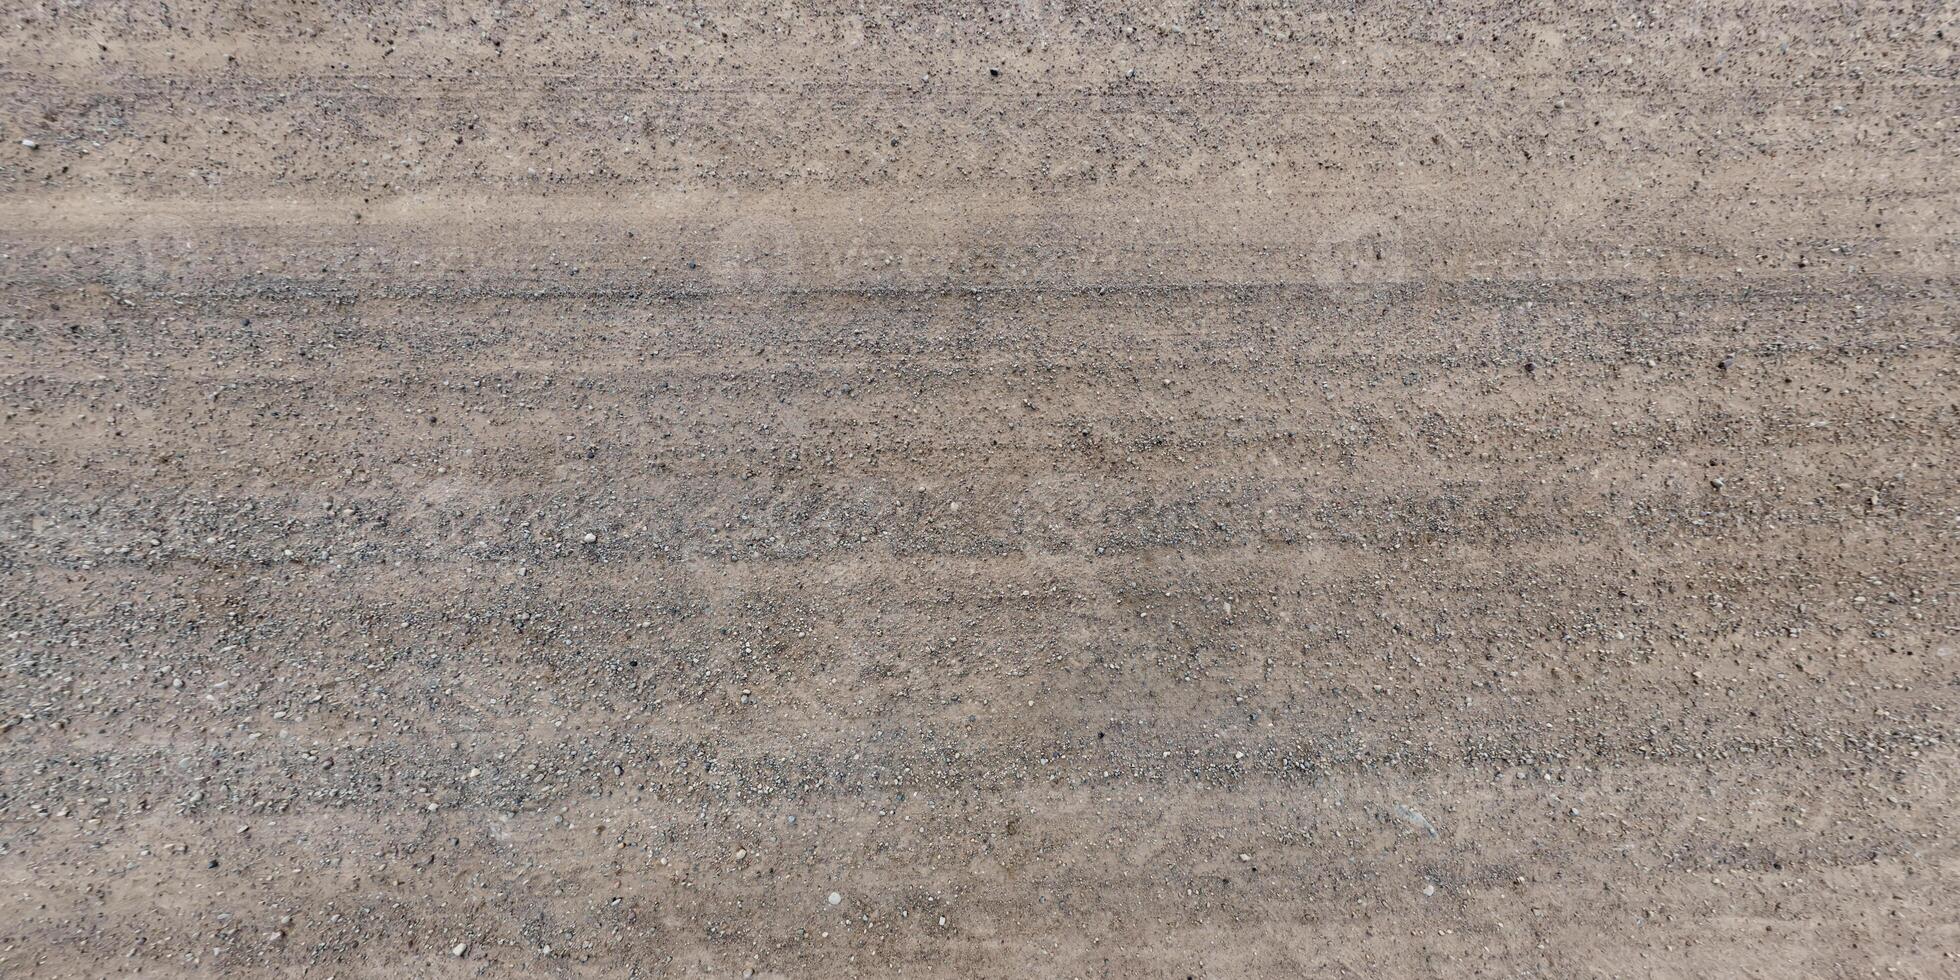 vue d'en haut sur la texture de la route de gravier avec traces de pneus de voiture photo